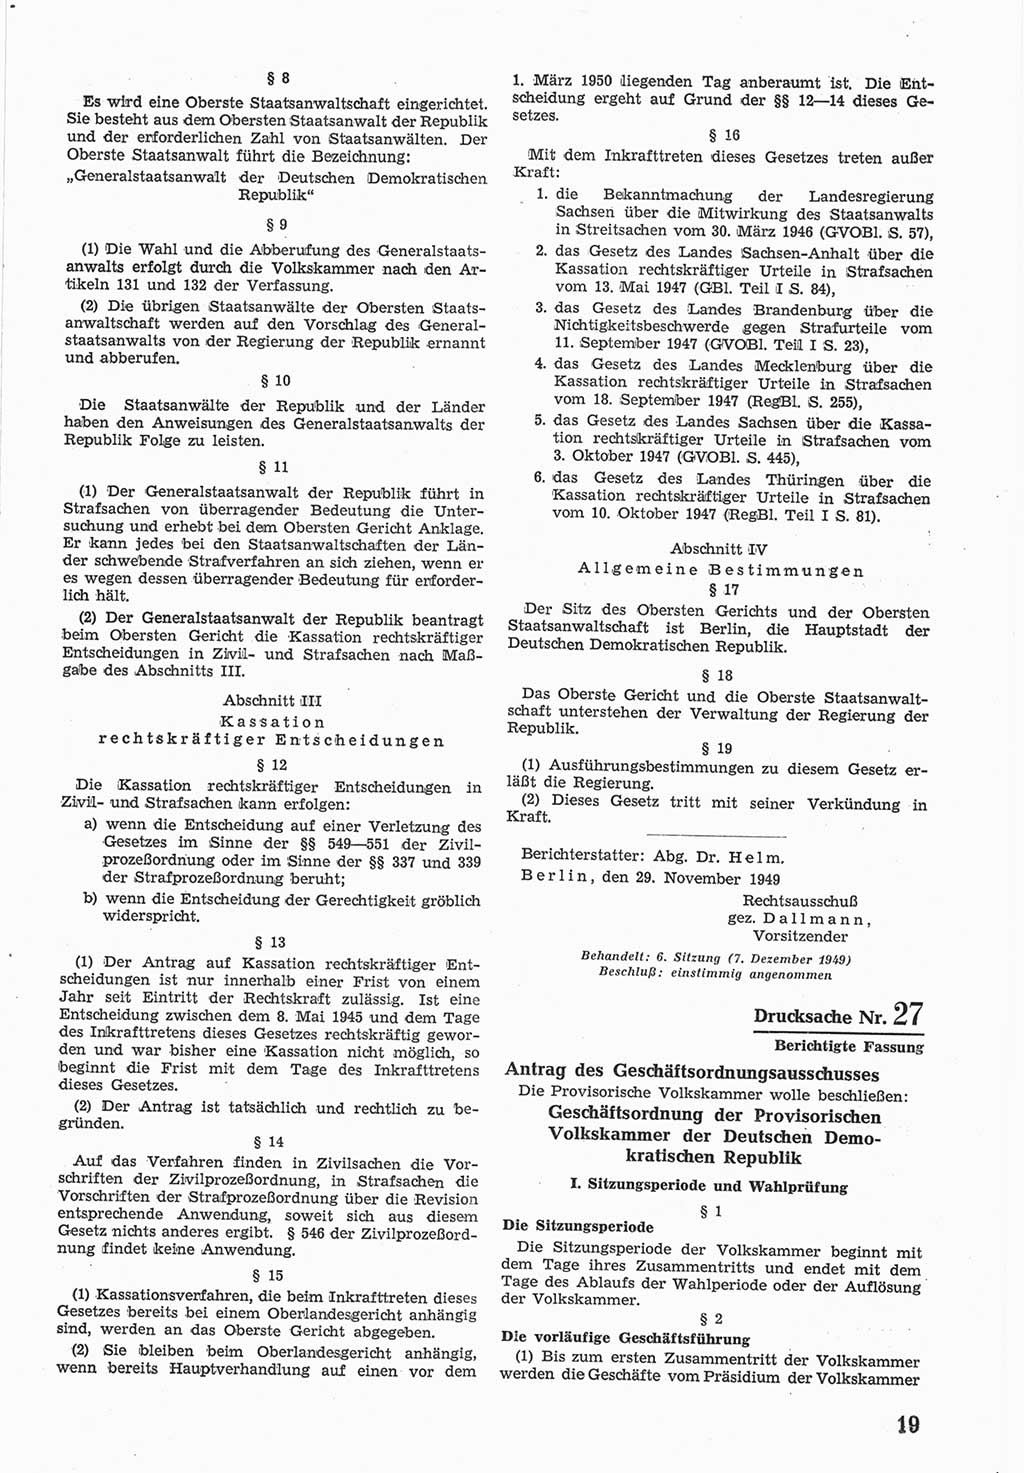 Provisorische Volkskammer (VK) der Deutschen Demokratischen Republik (DDR) 1949-1950, Dokument 587 (Prov. VK DDR 1949-1950, Dok. 587)